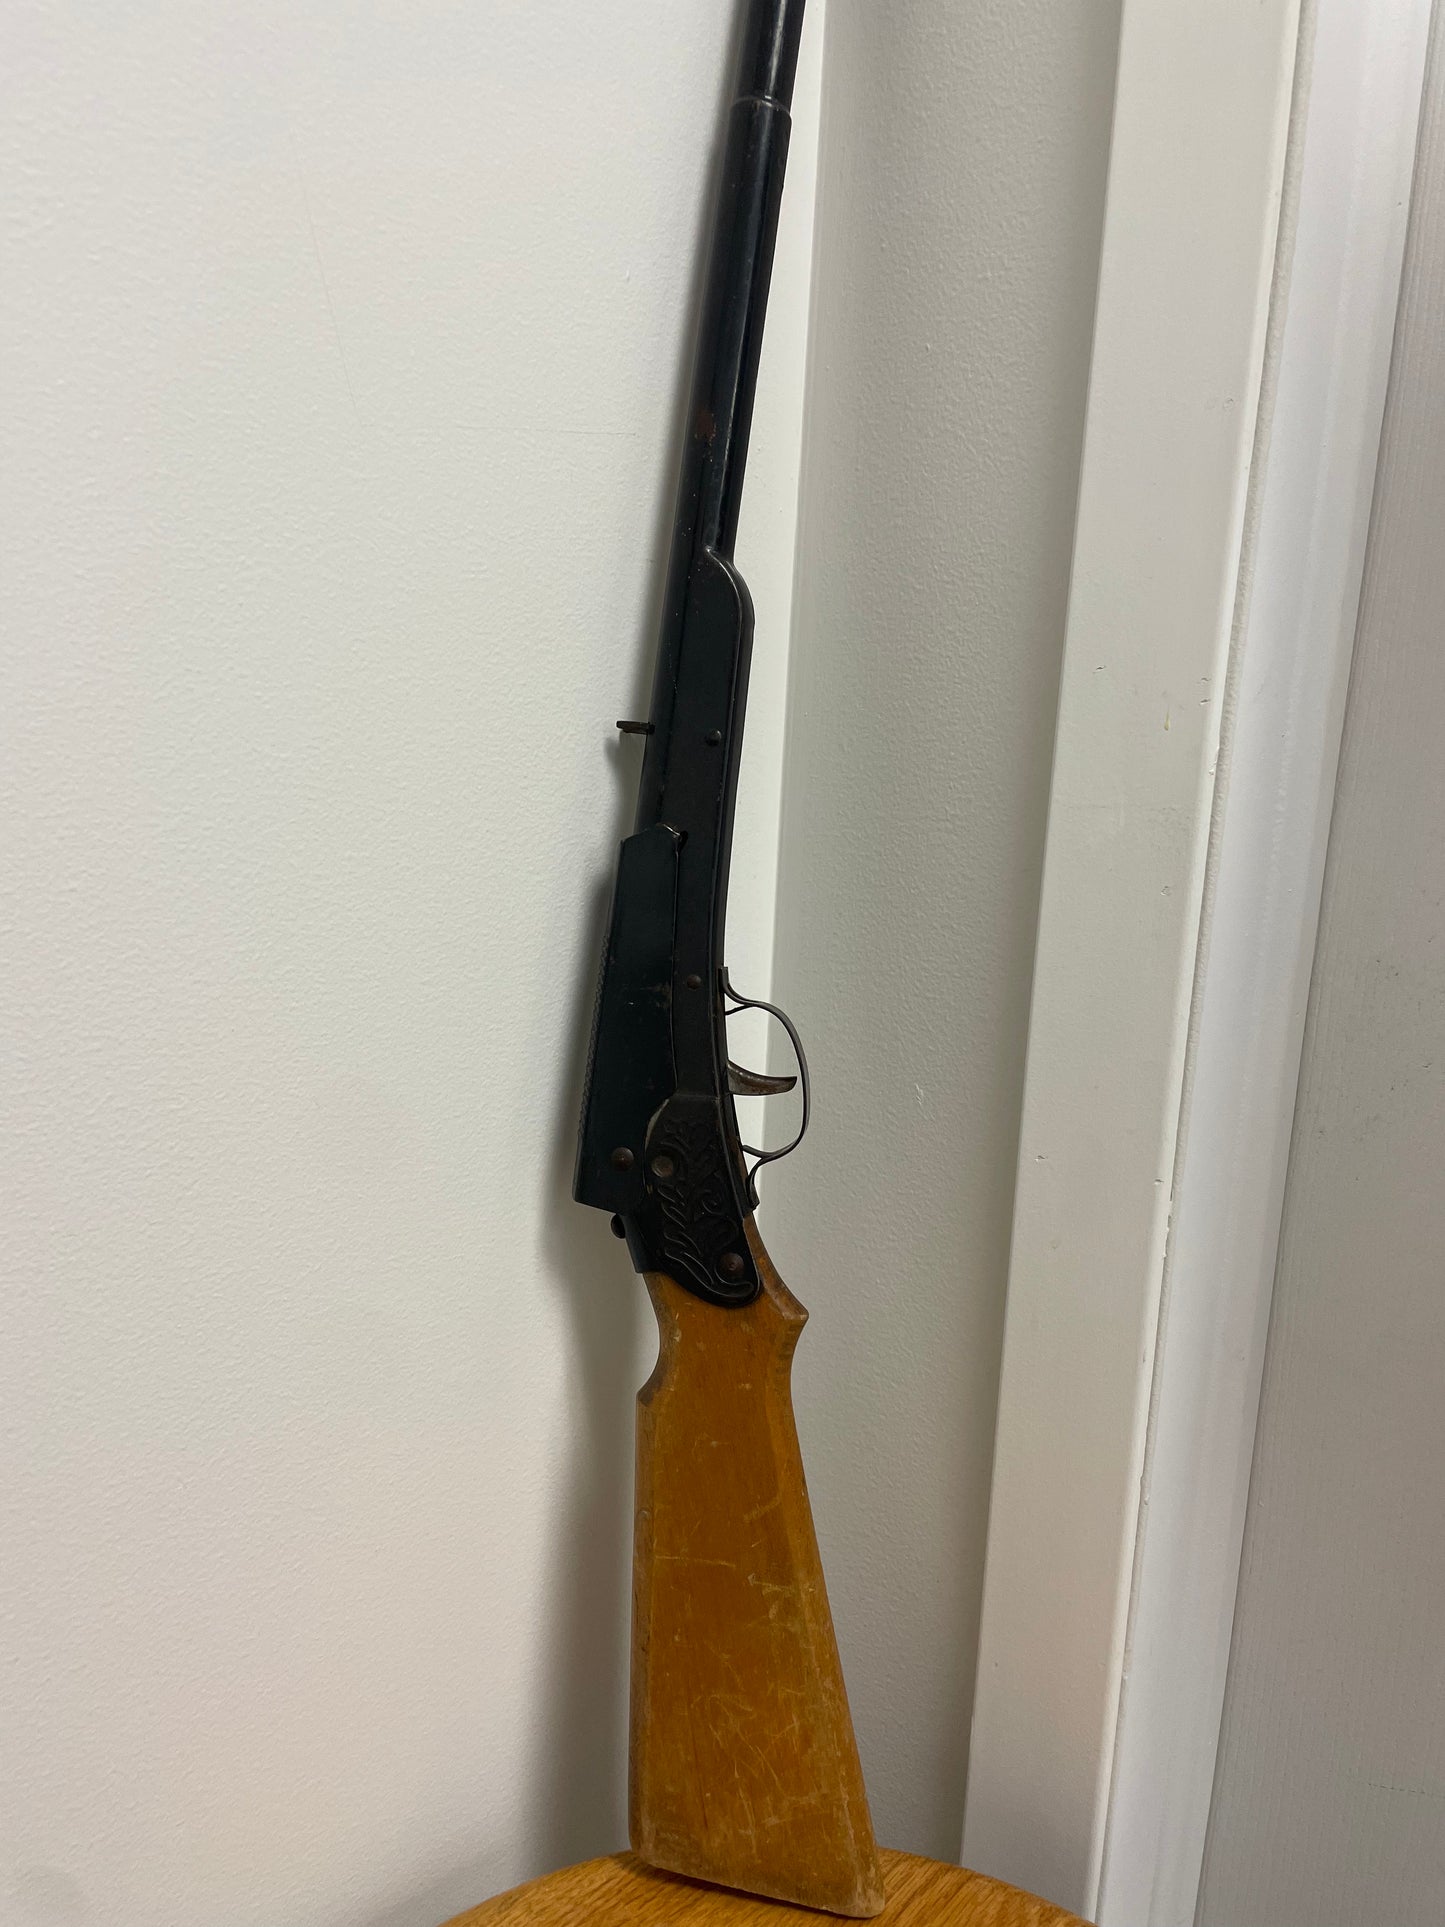 Daisy Model 106 Shot Gun